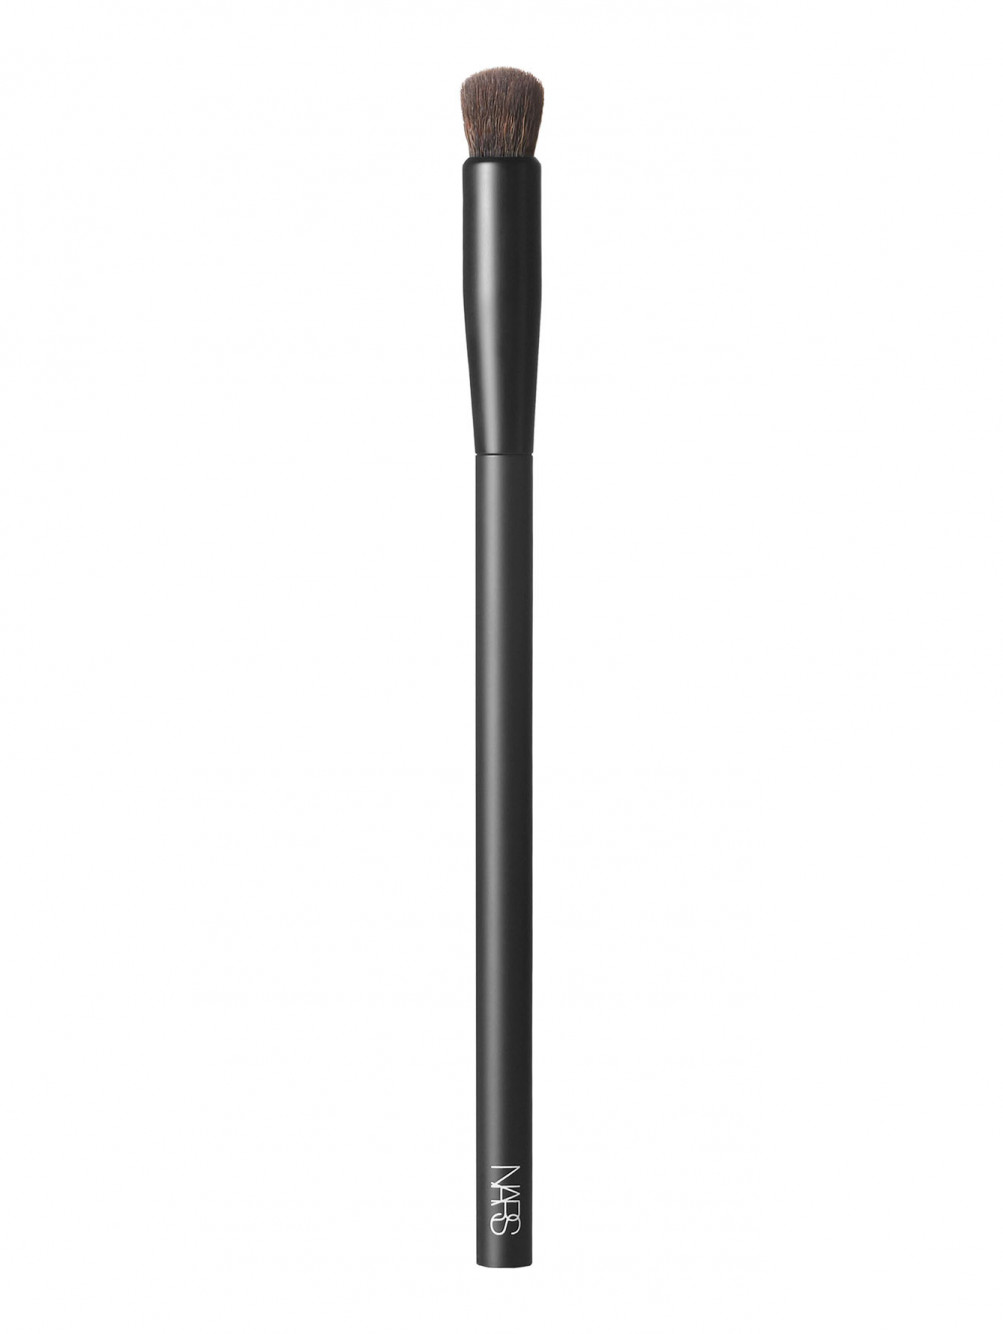 Кисть #11 Soft Matte Complete Concealer Brush - Общий вид